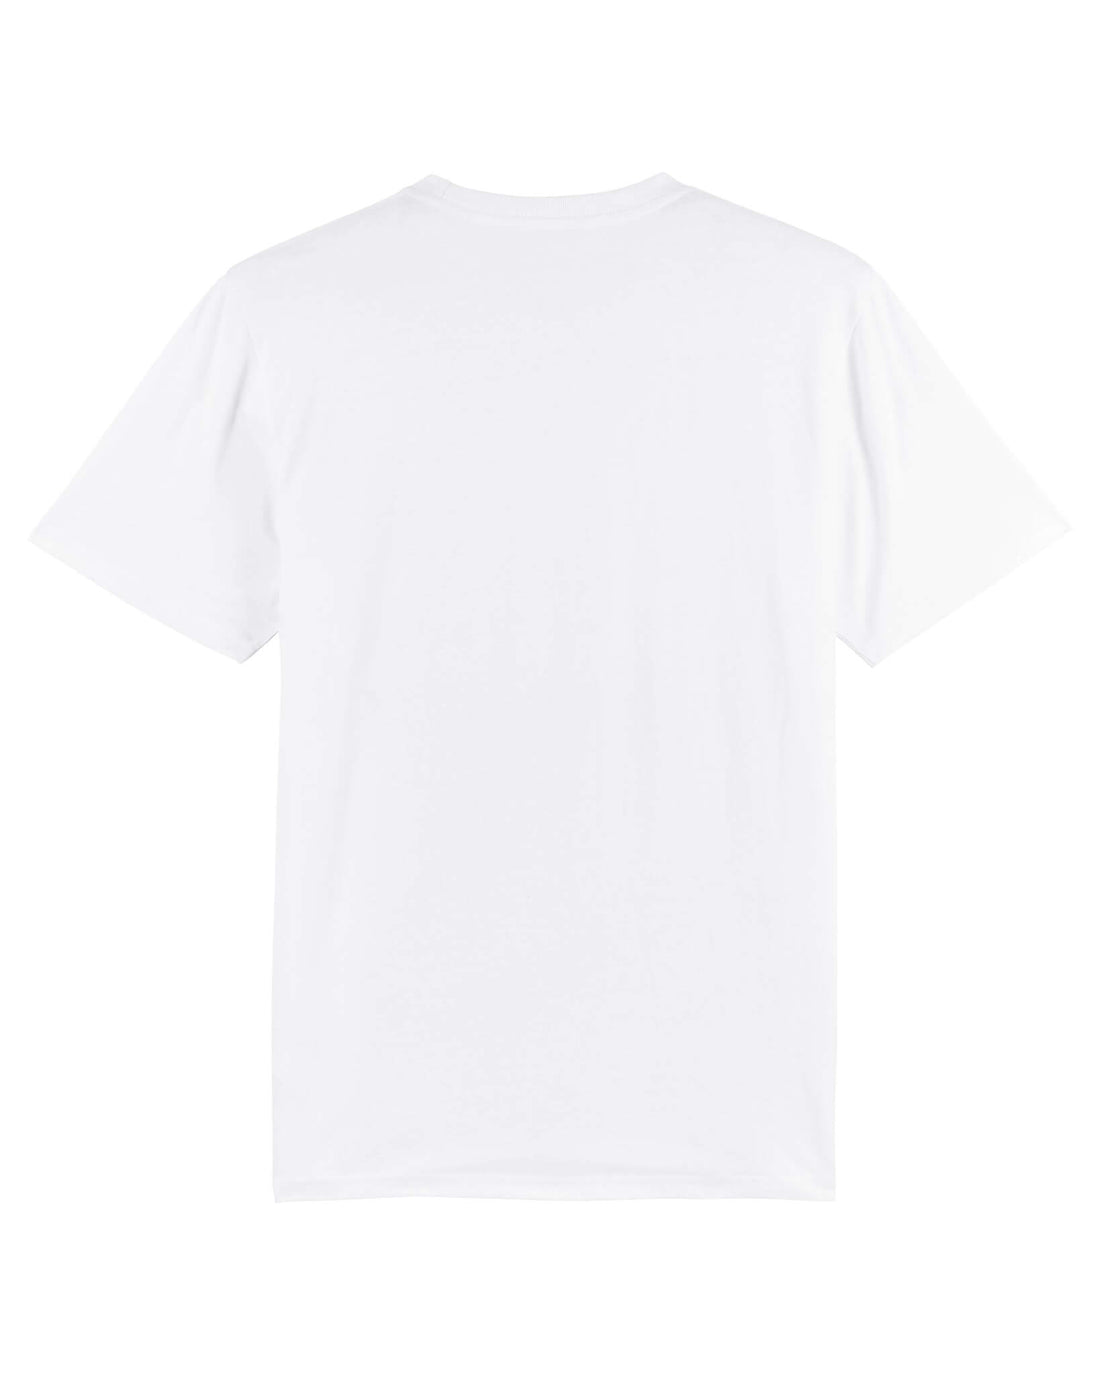 White Skater T-Shirt, Supply Logo Back Print